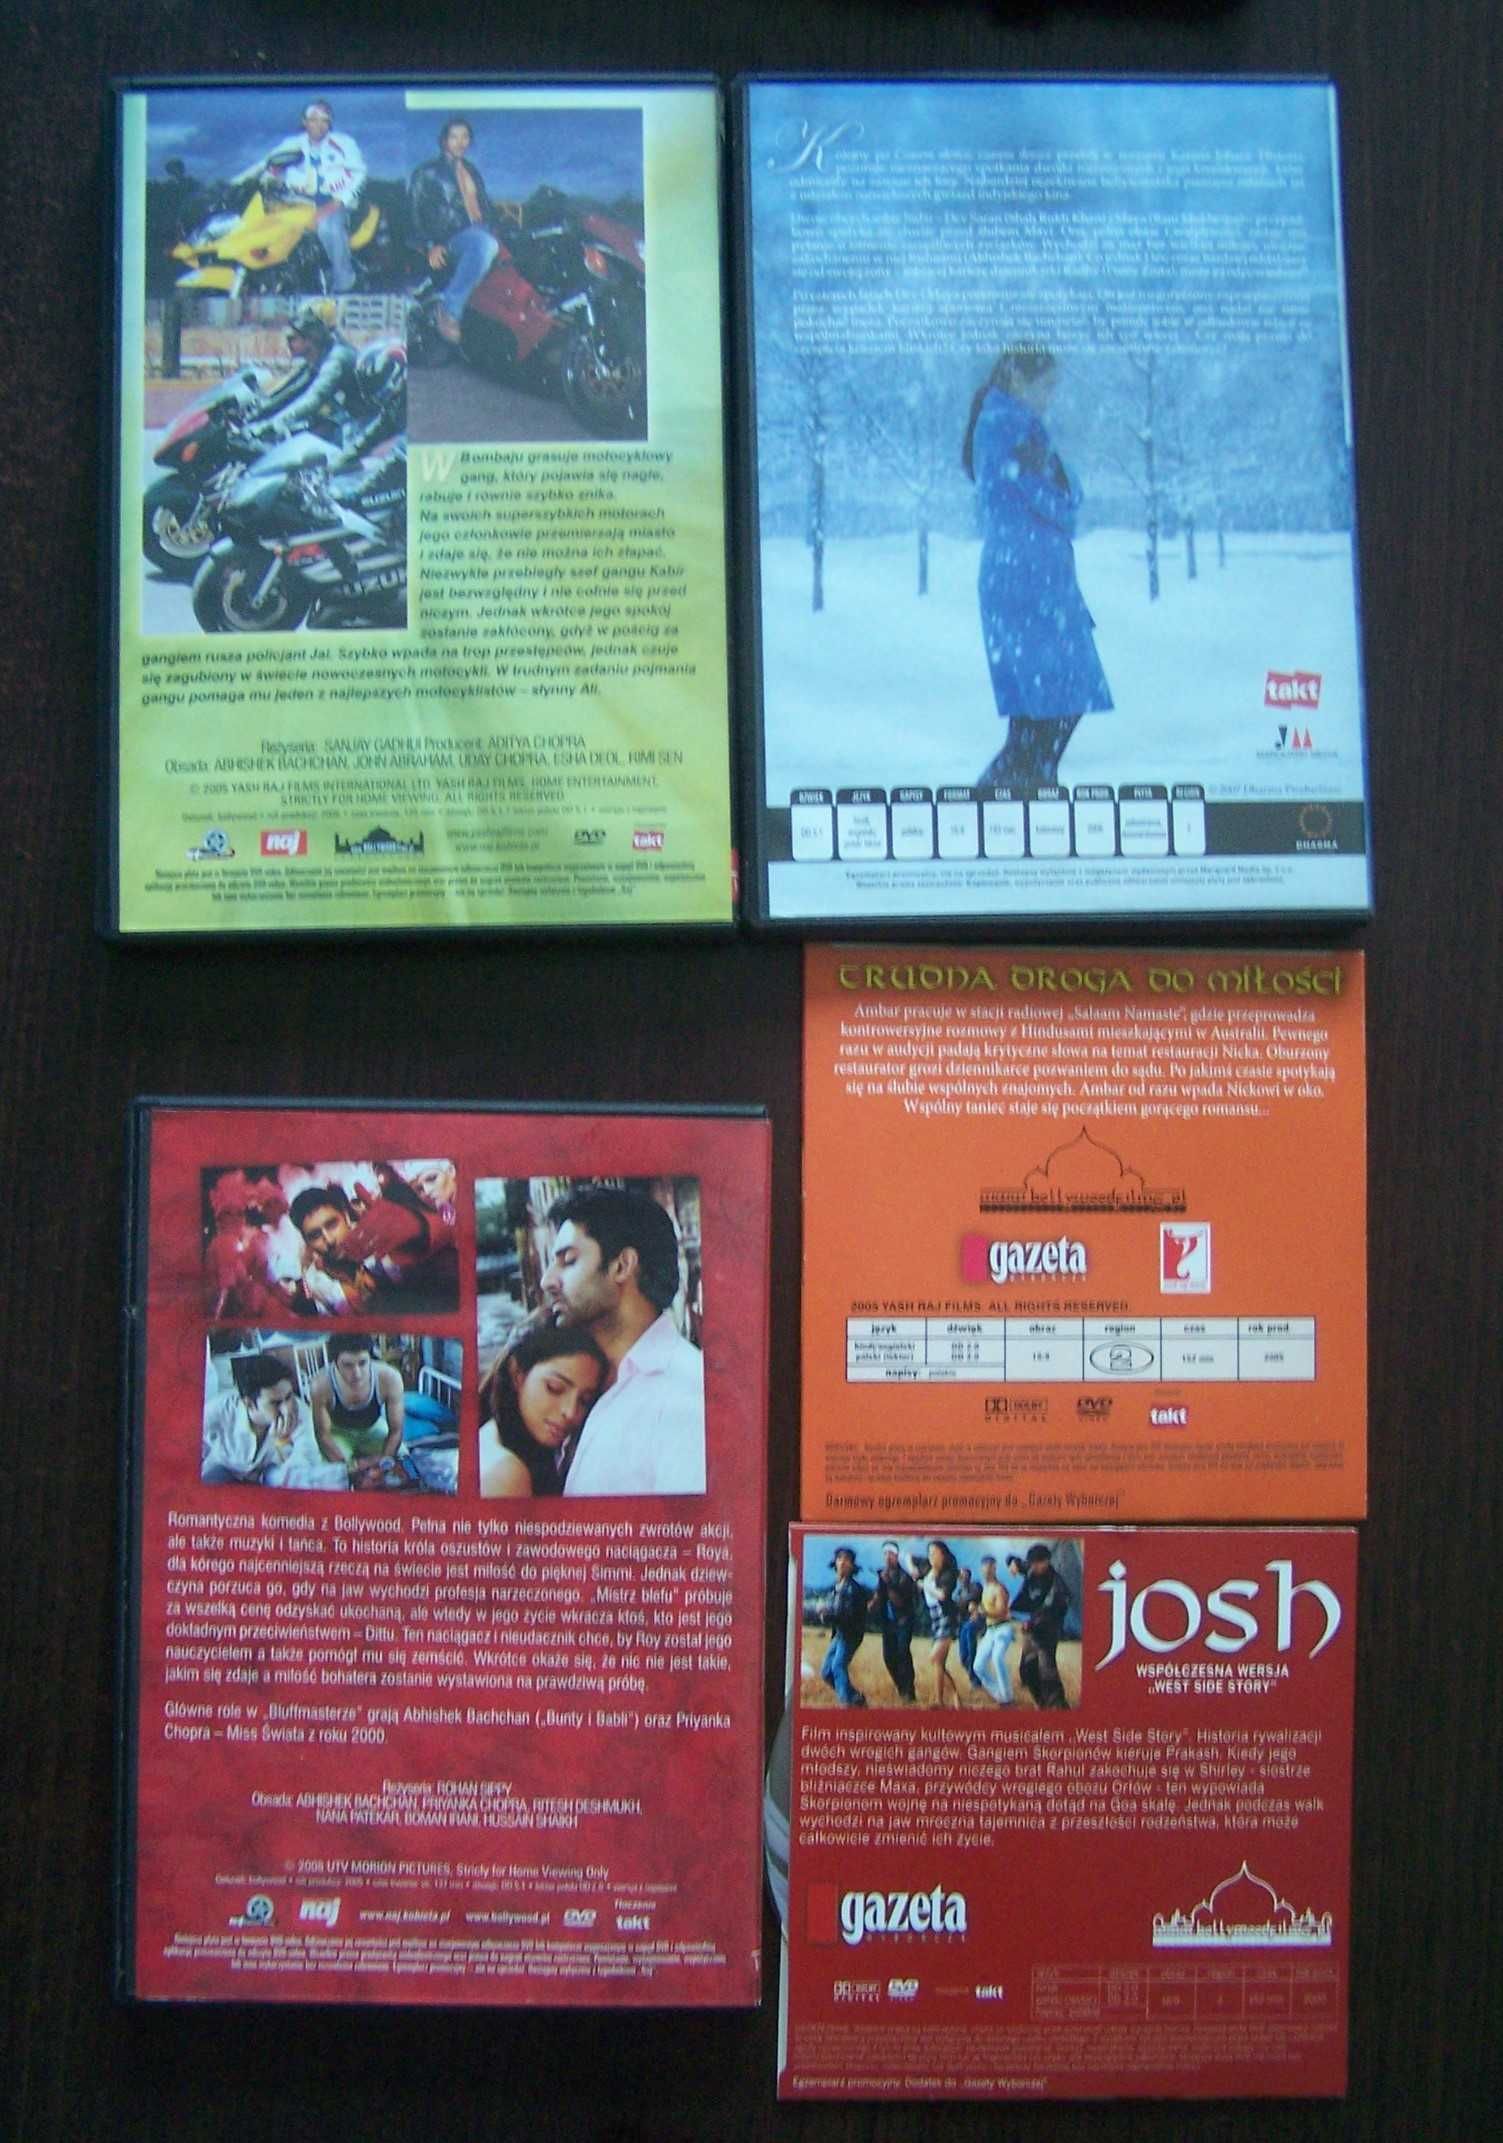 Bollywood 5 filmów DVD ładny zestaw